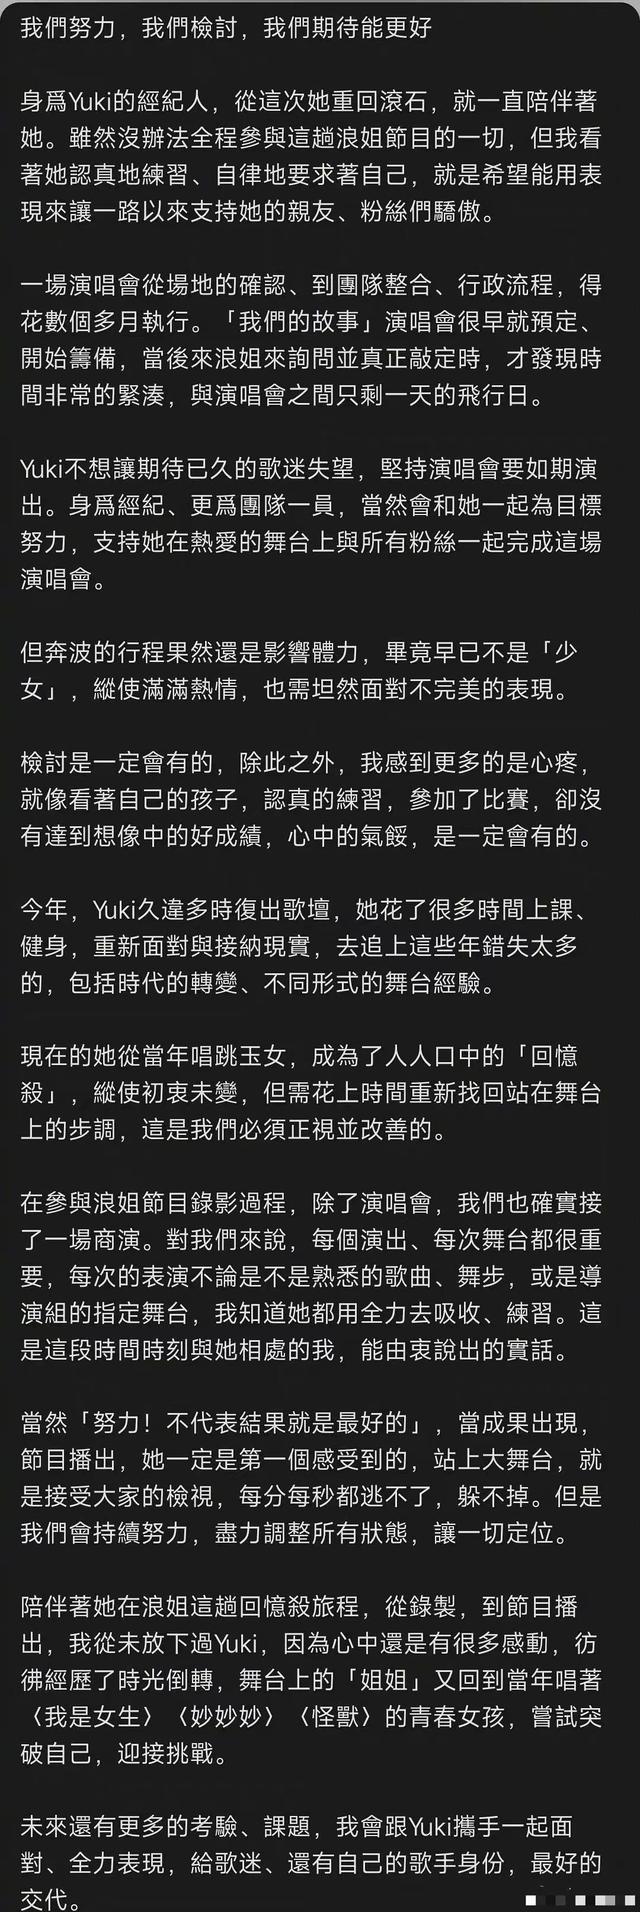 刘维曝徐怀钰私下很难亲近，公开怒撕其经纪人，斥责对方失责甩锅